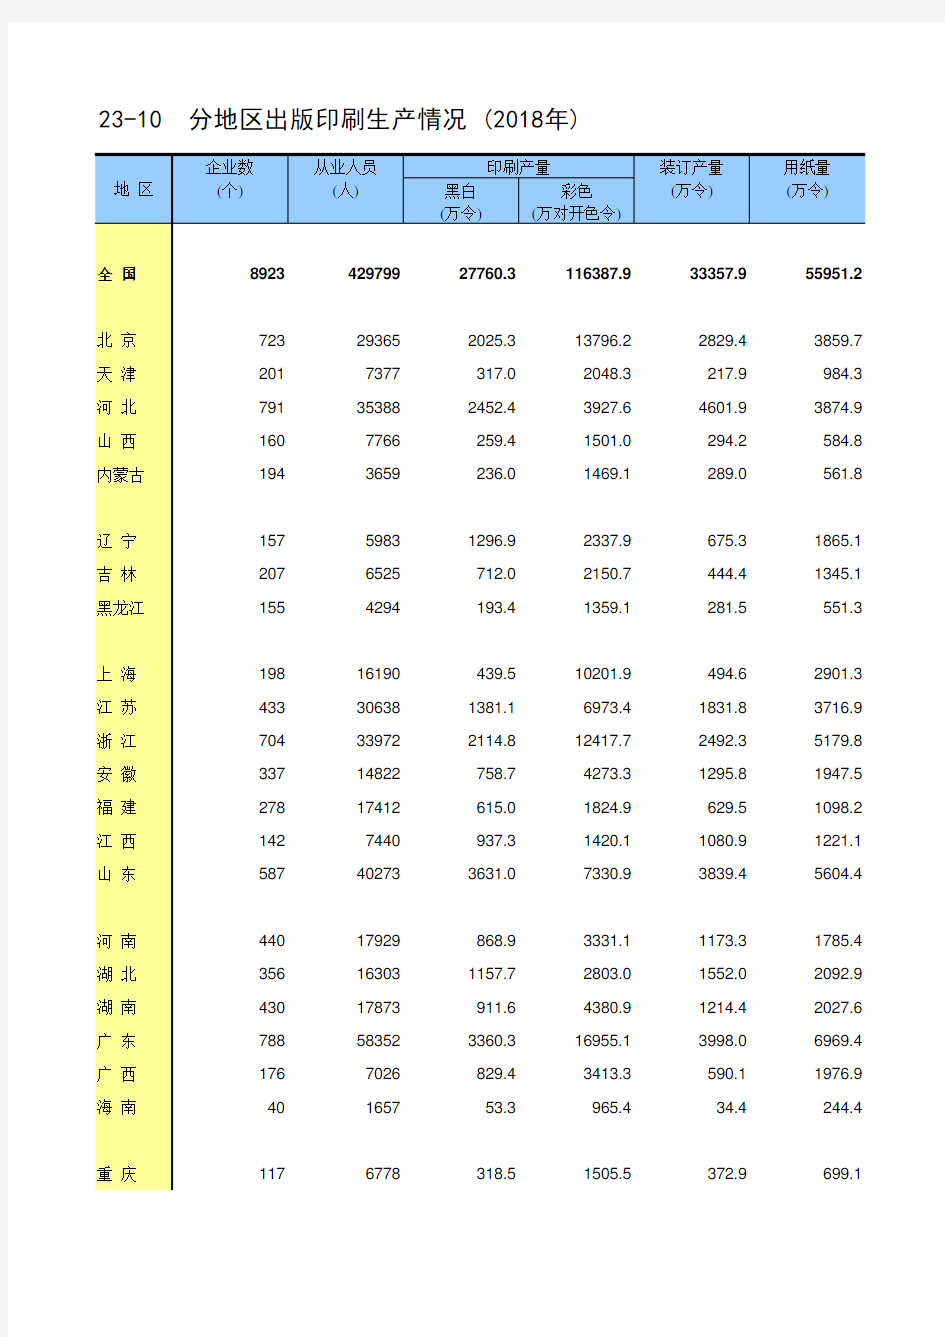 中国统计年鉴2019全国各省市区社会经济发展指标：分地区出版印刷生产情况(2018年)